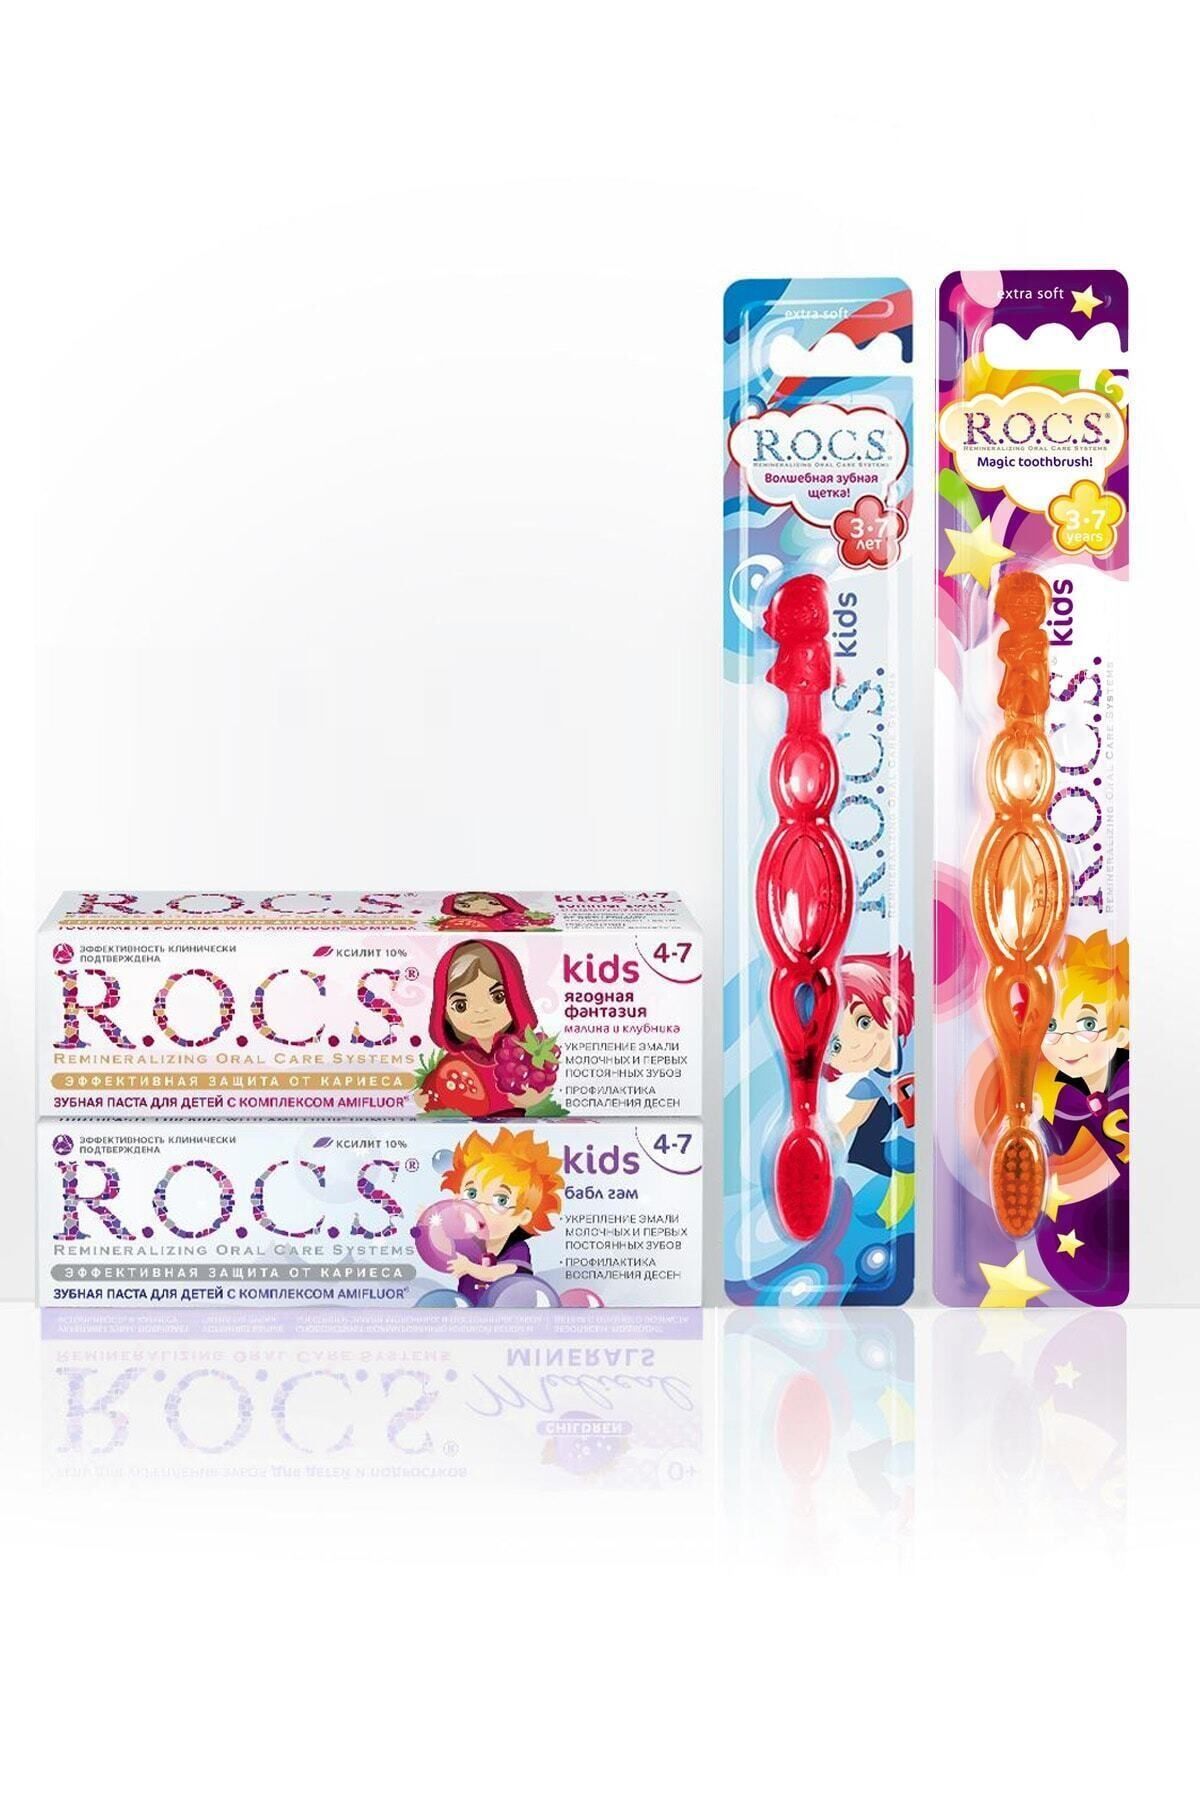 R.O.C.S. Rocs Kids 4-7 Yaş Diş Ağız Bakım Seti - 2 Diş Macunu Ve 2 Diş Fırçası